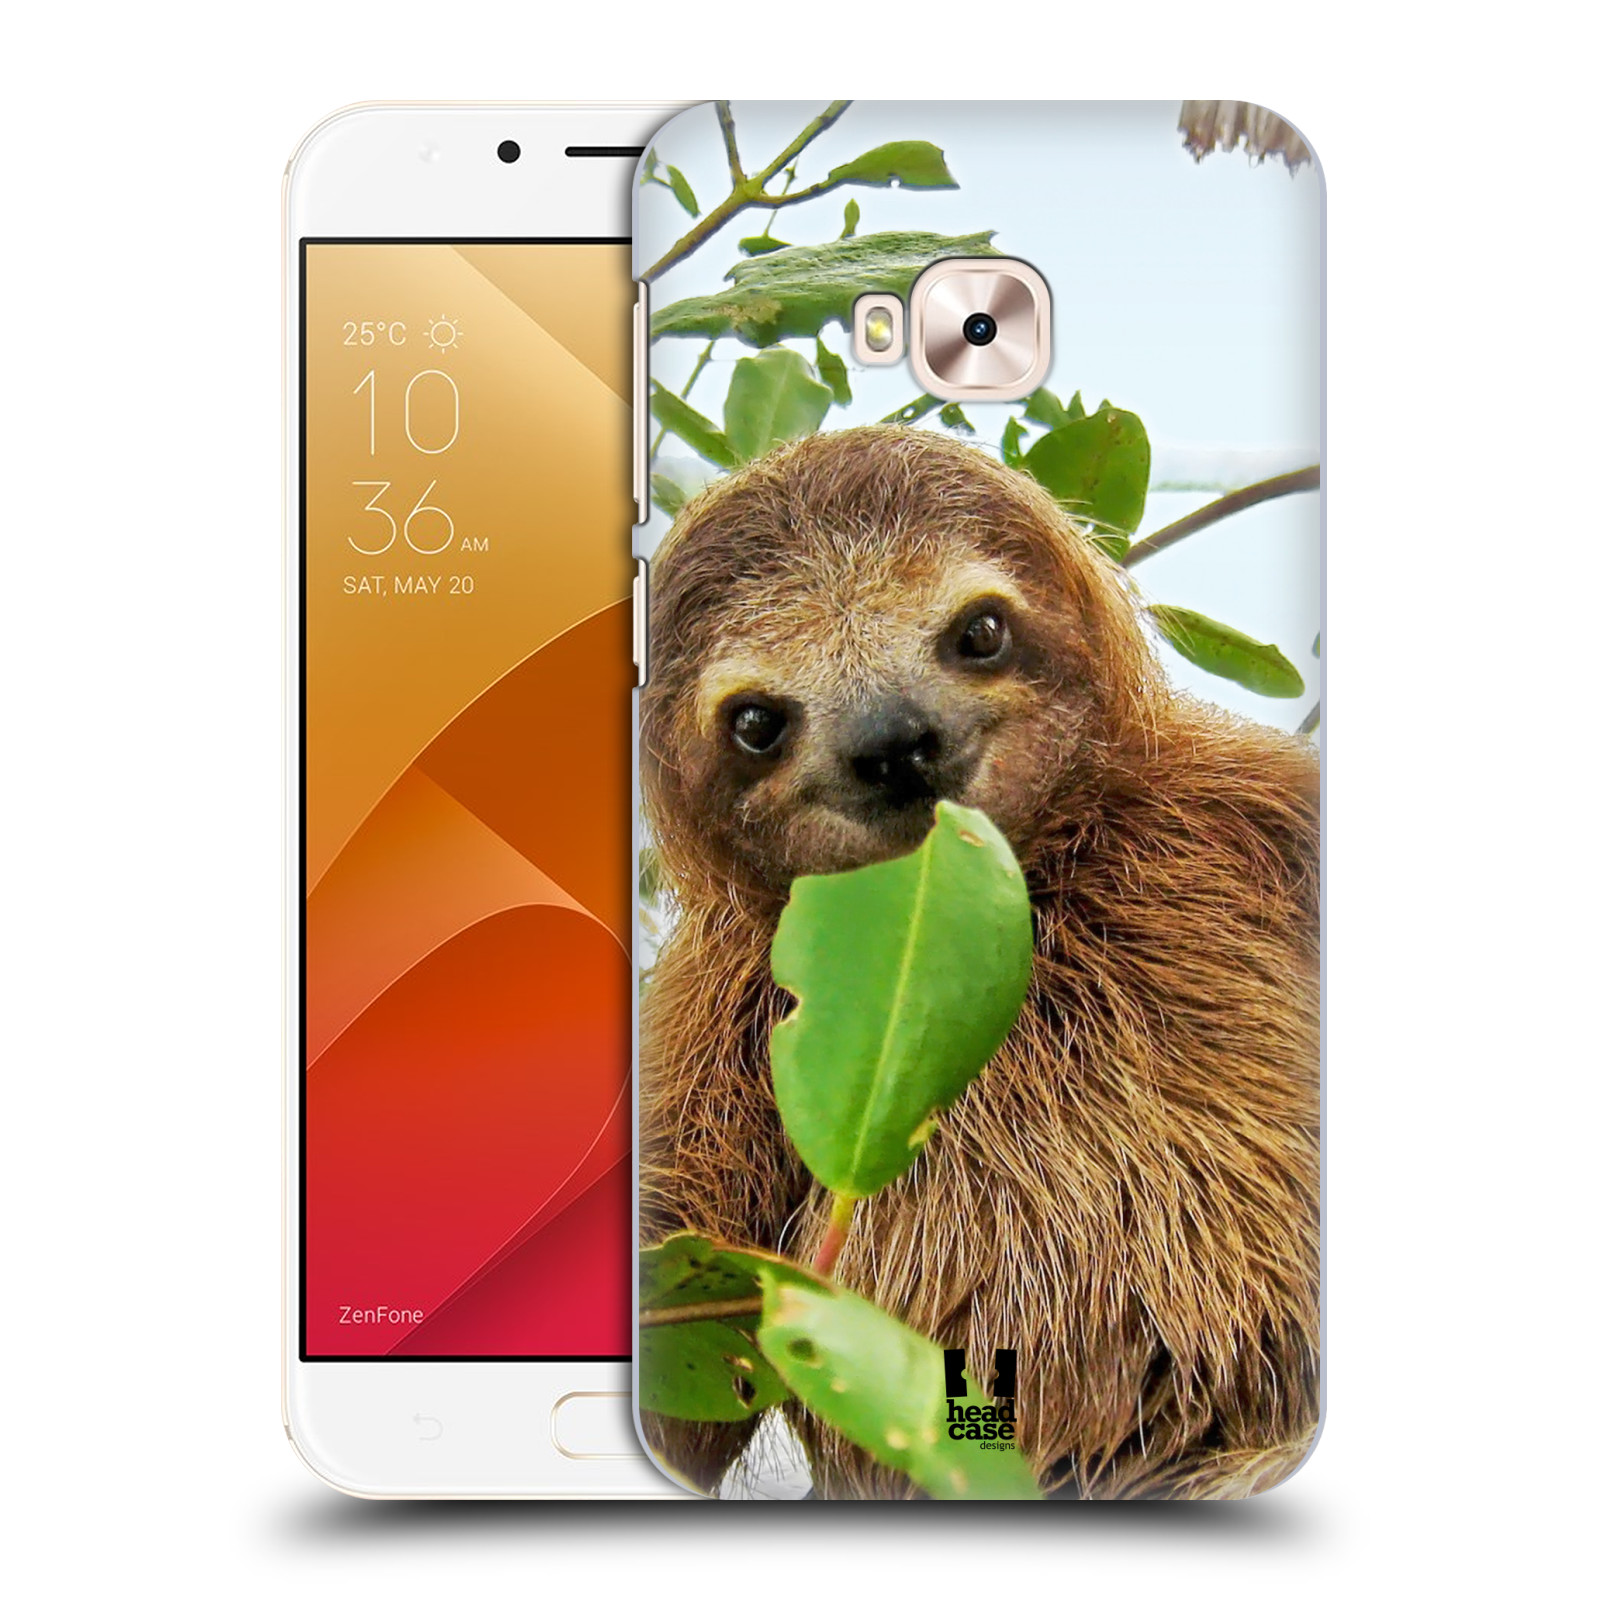 HEAD CASE plastový obal na mobil Asus Zenfone 4 Selfie Pro ZD552KL vzor slavná zvířata foto lenochod